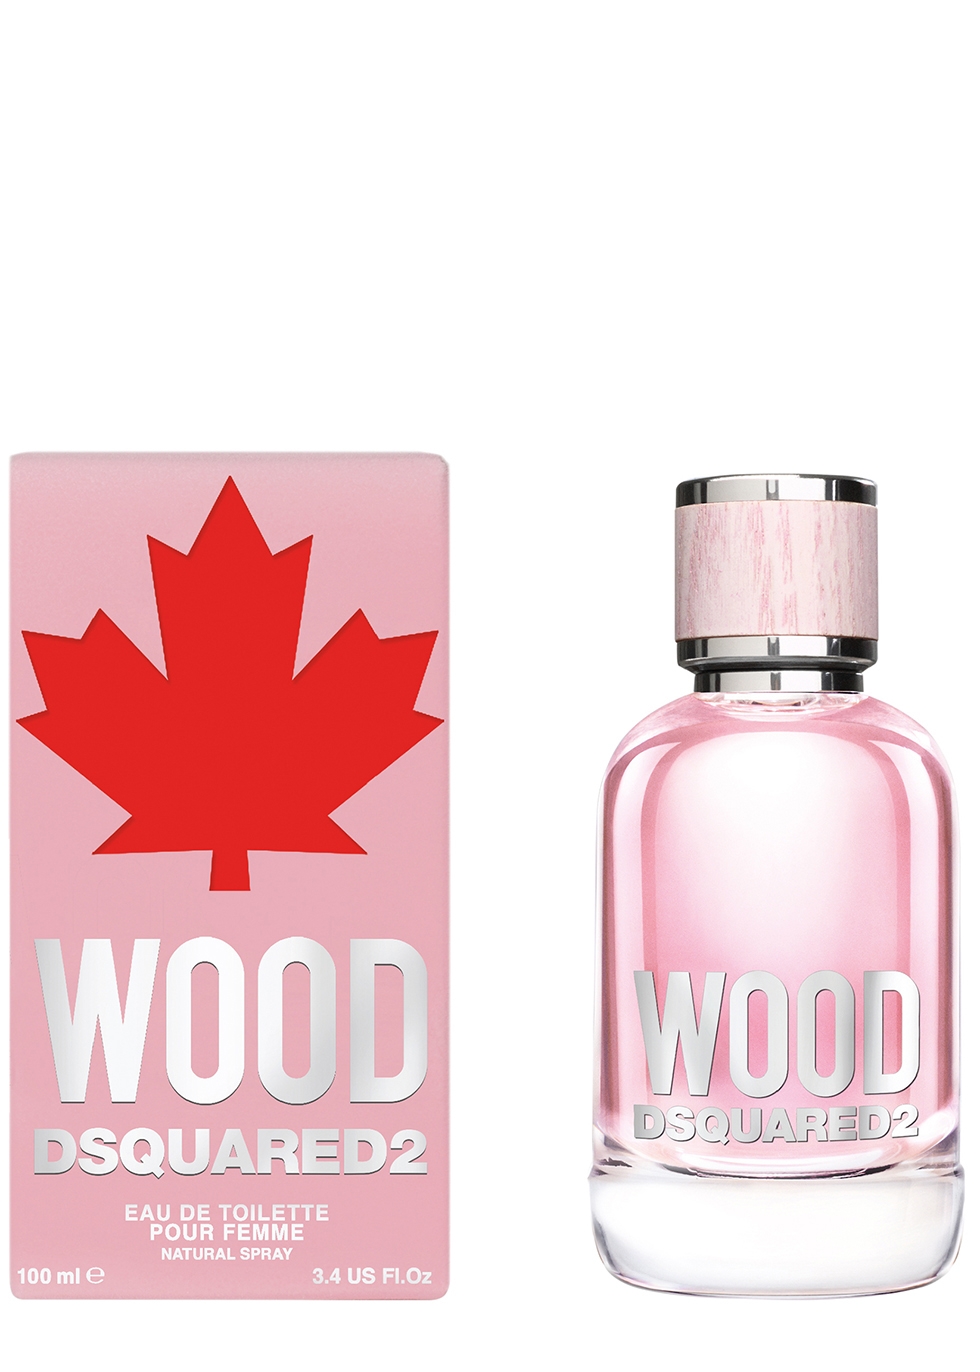 dsquared wood 100ml